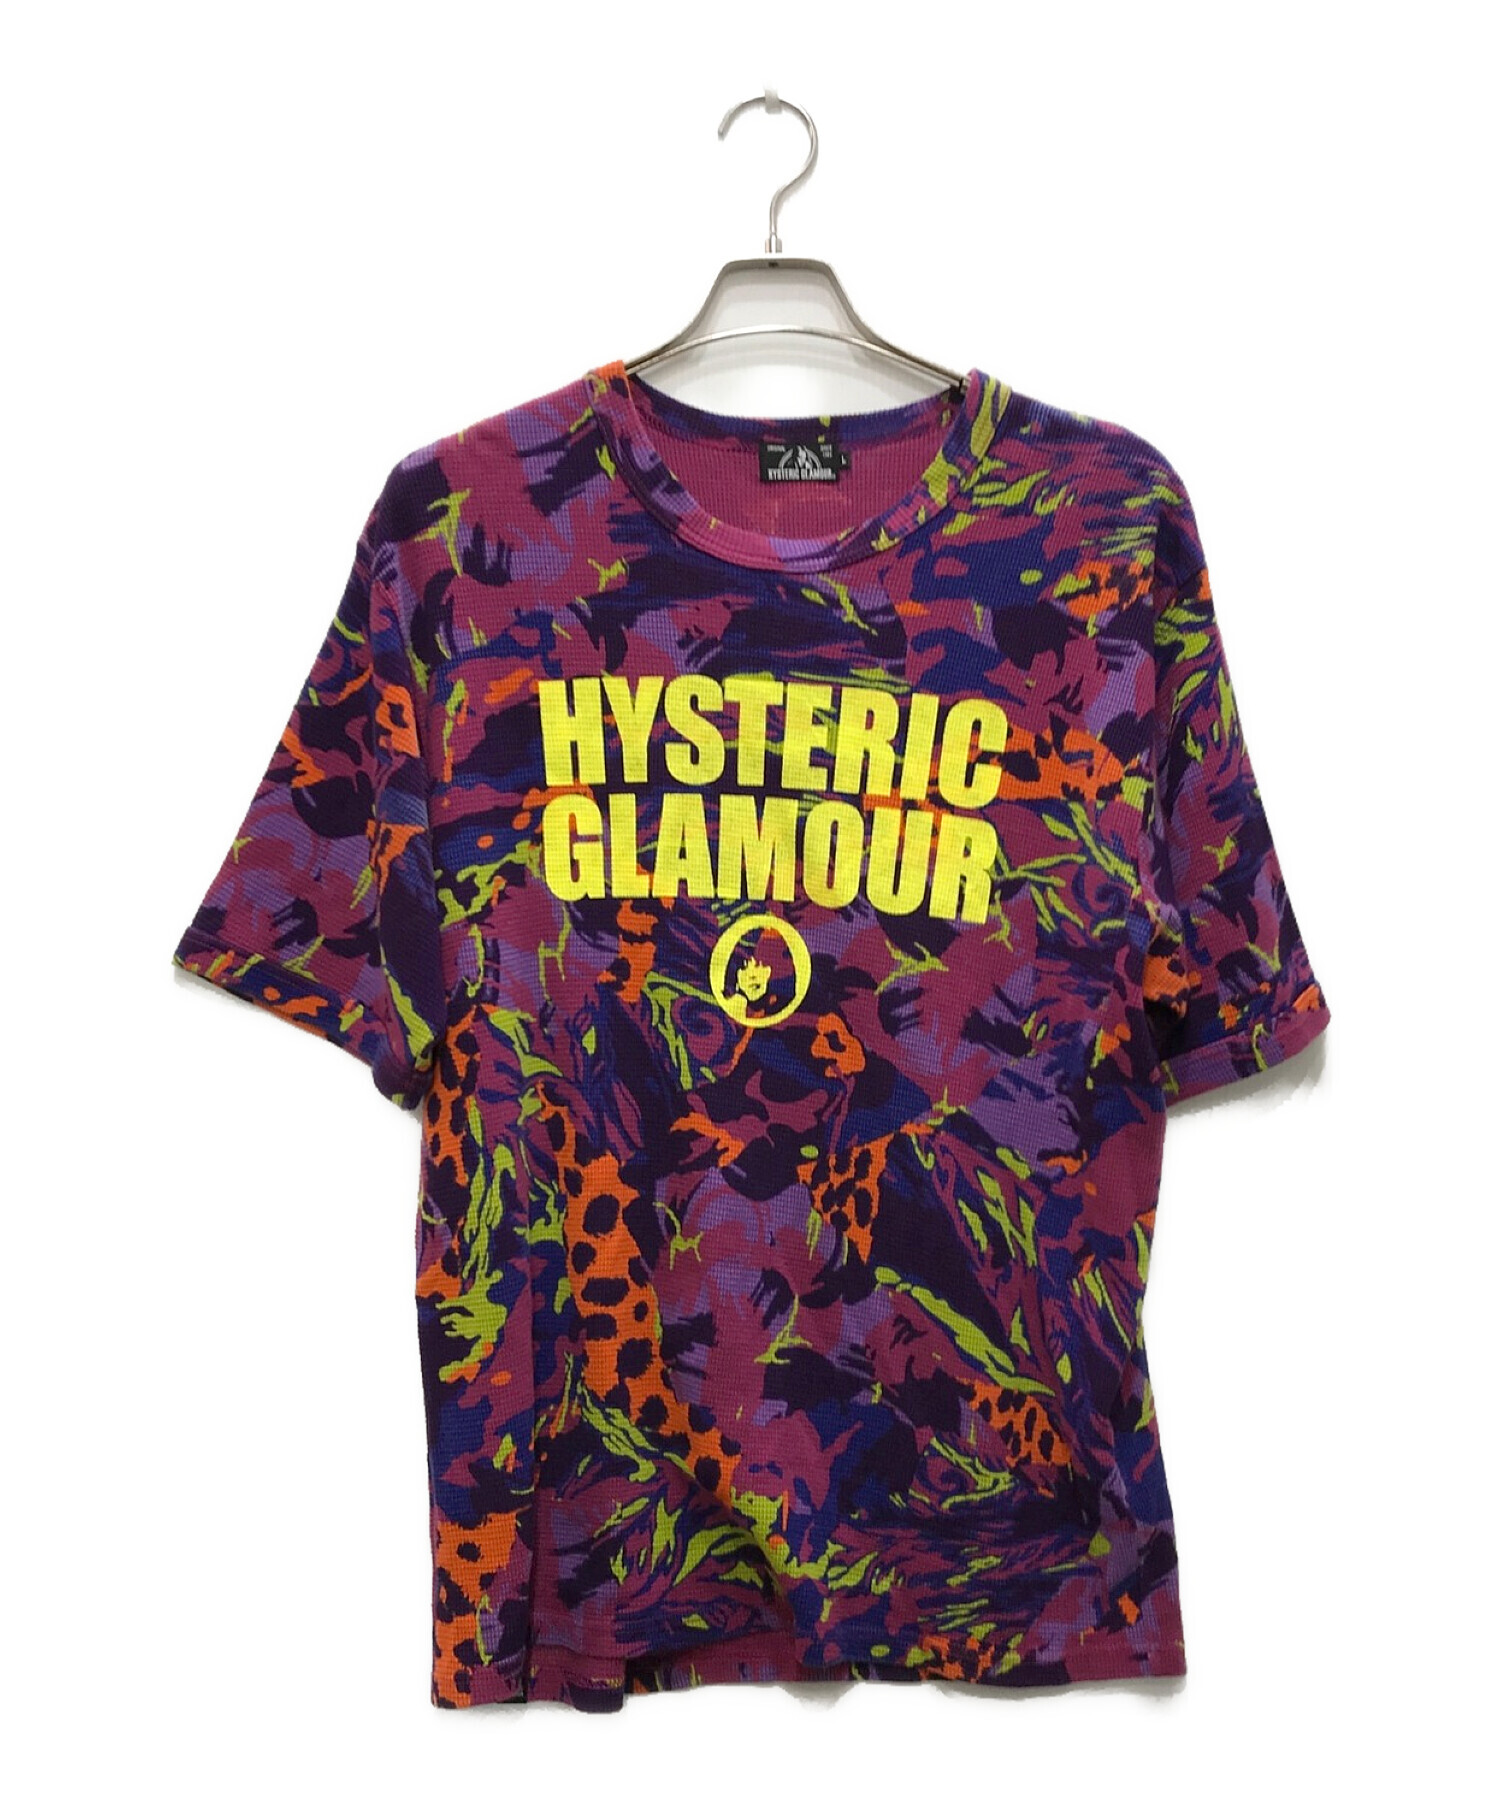 Hysteric Glamour (ヒステリックグラマー) CIRCLE GIRL LOGO Tシャツ パープル サイズ:L